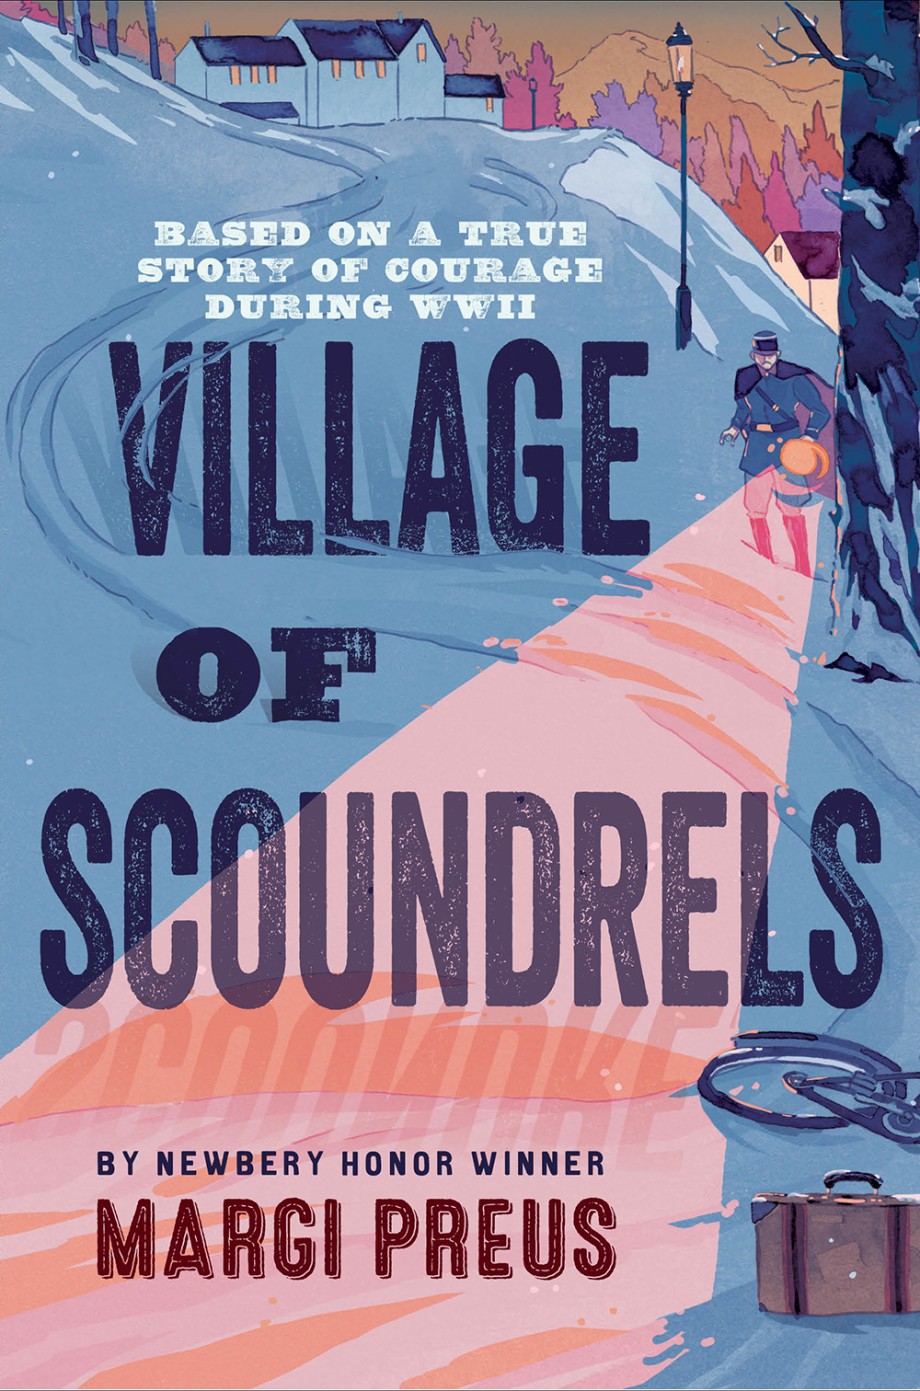 Village of Scoundrels 